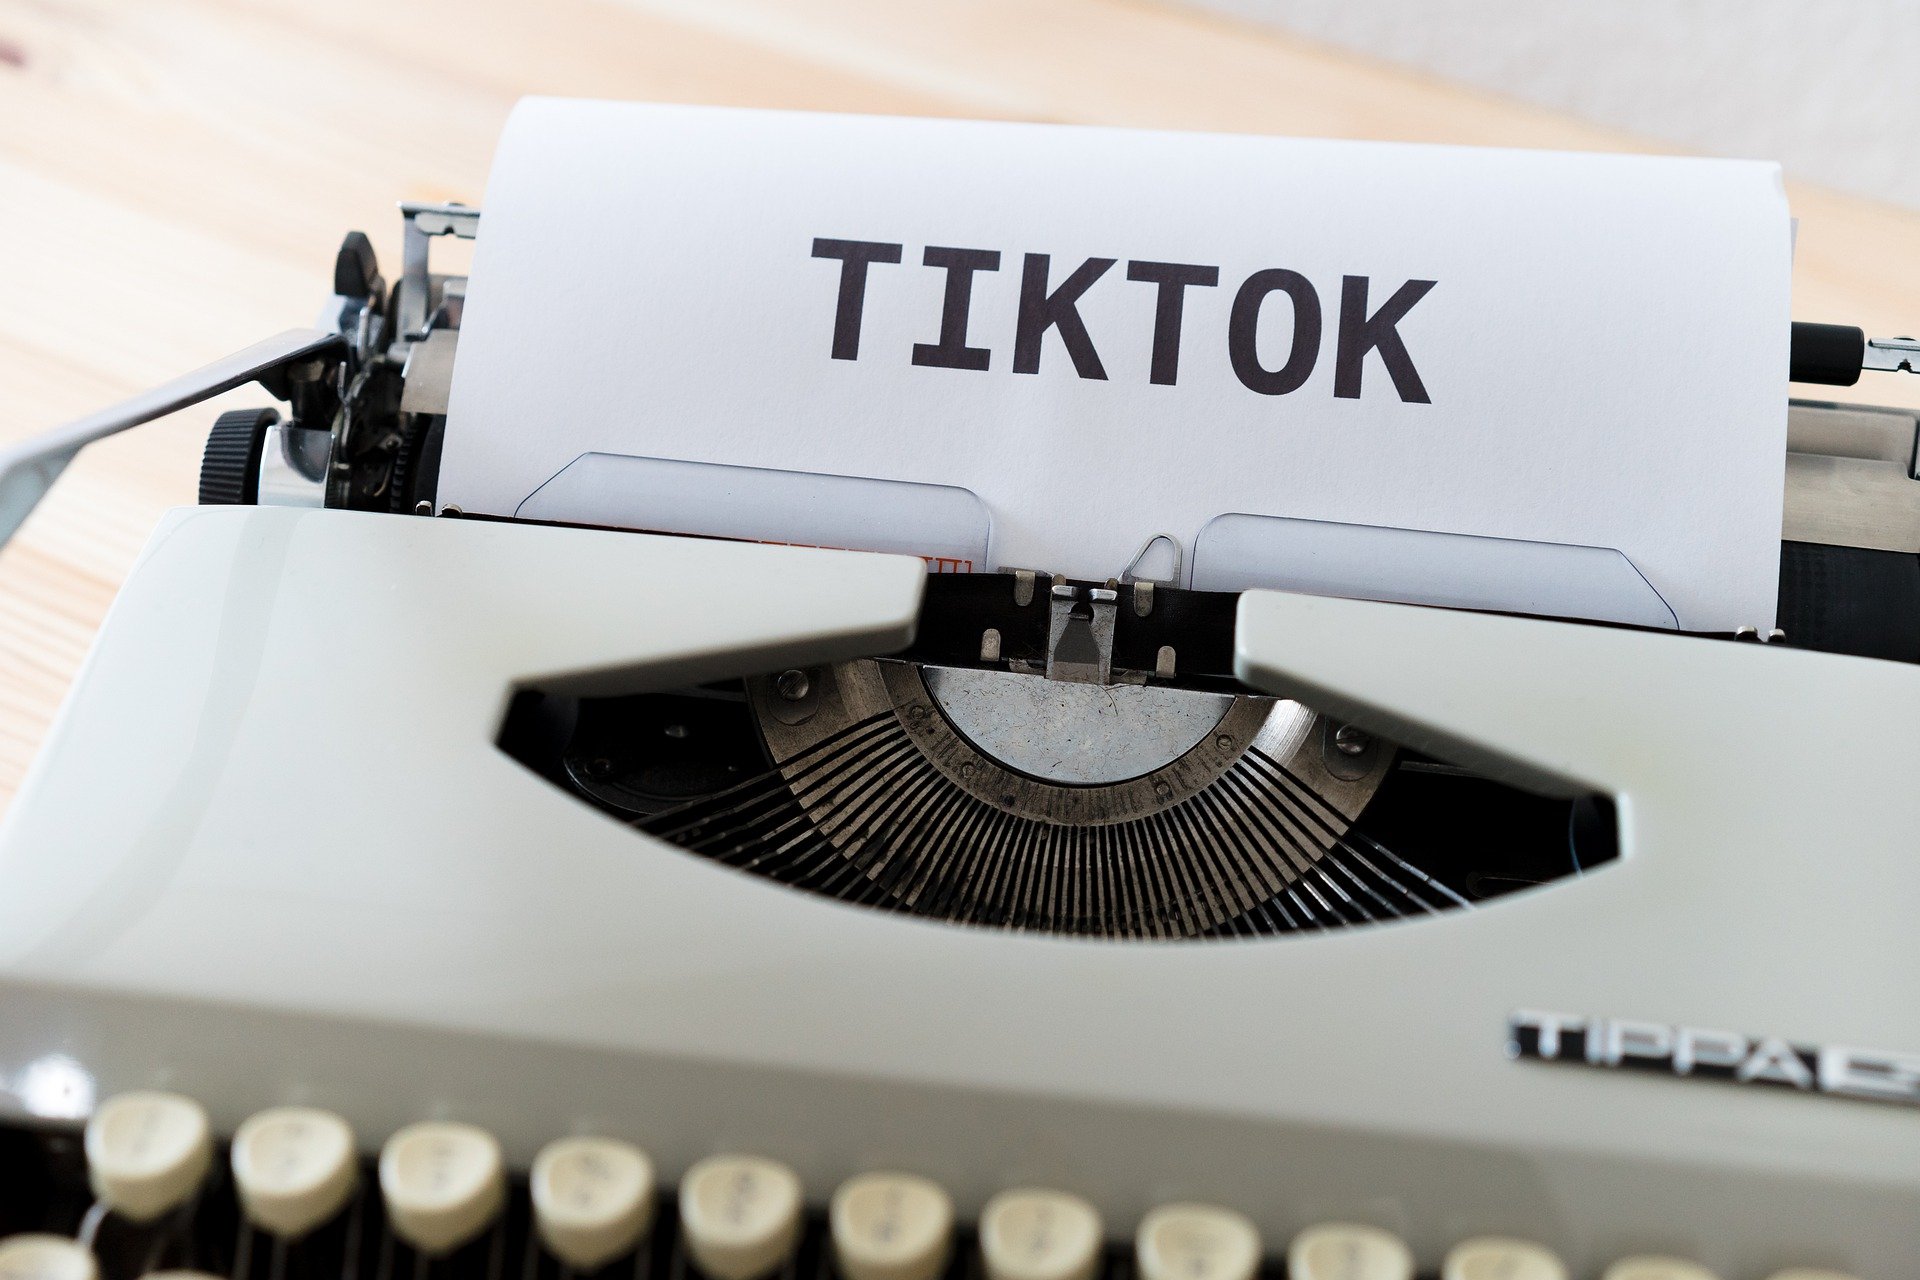 Comment joindre TikTok pour un problème d'accès à votre compte (mot de passe, pseudo, etc) ?
